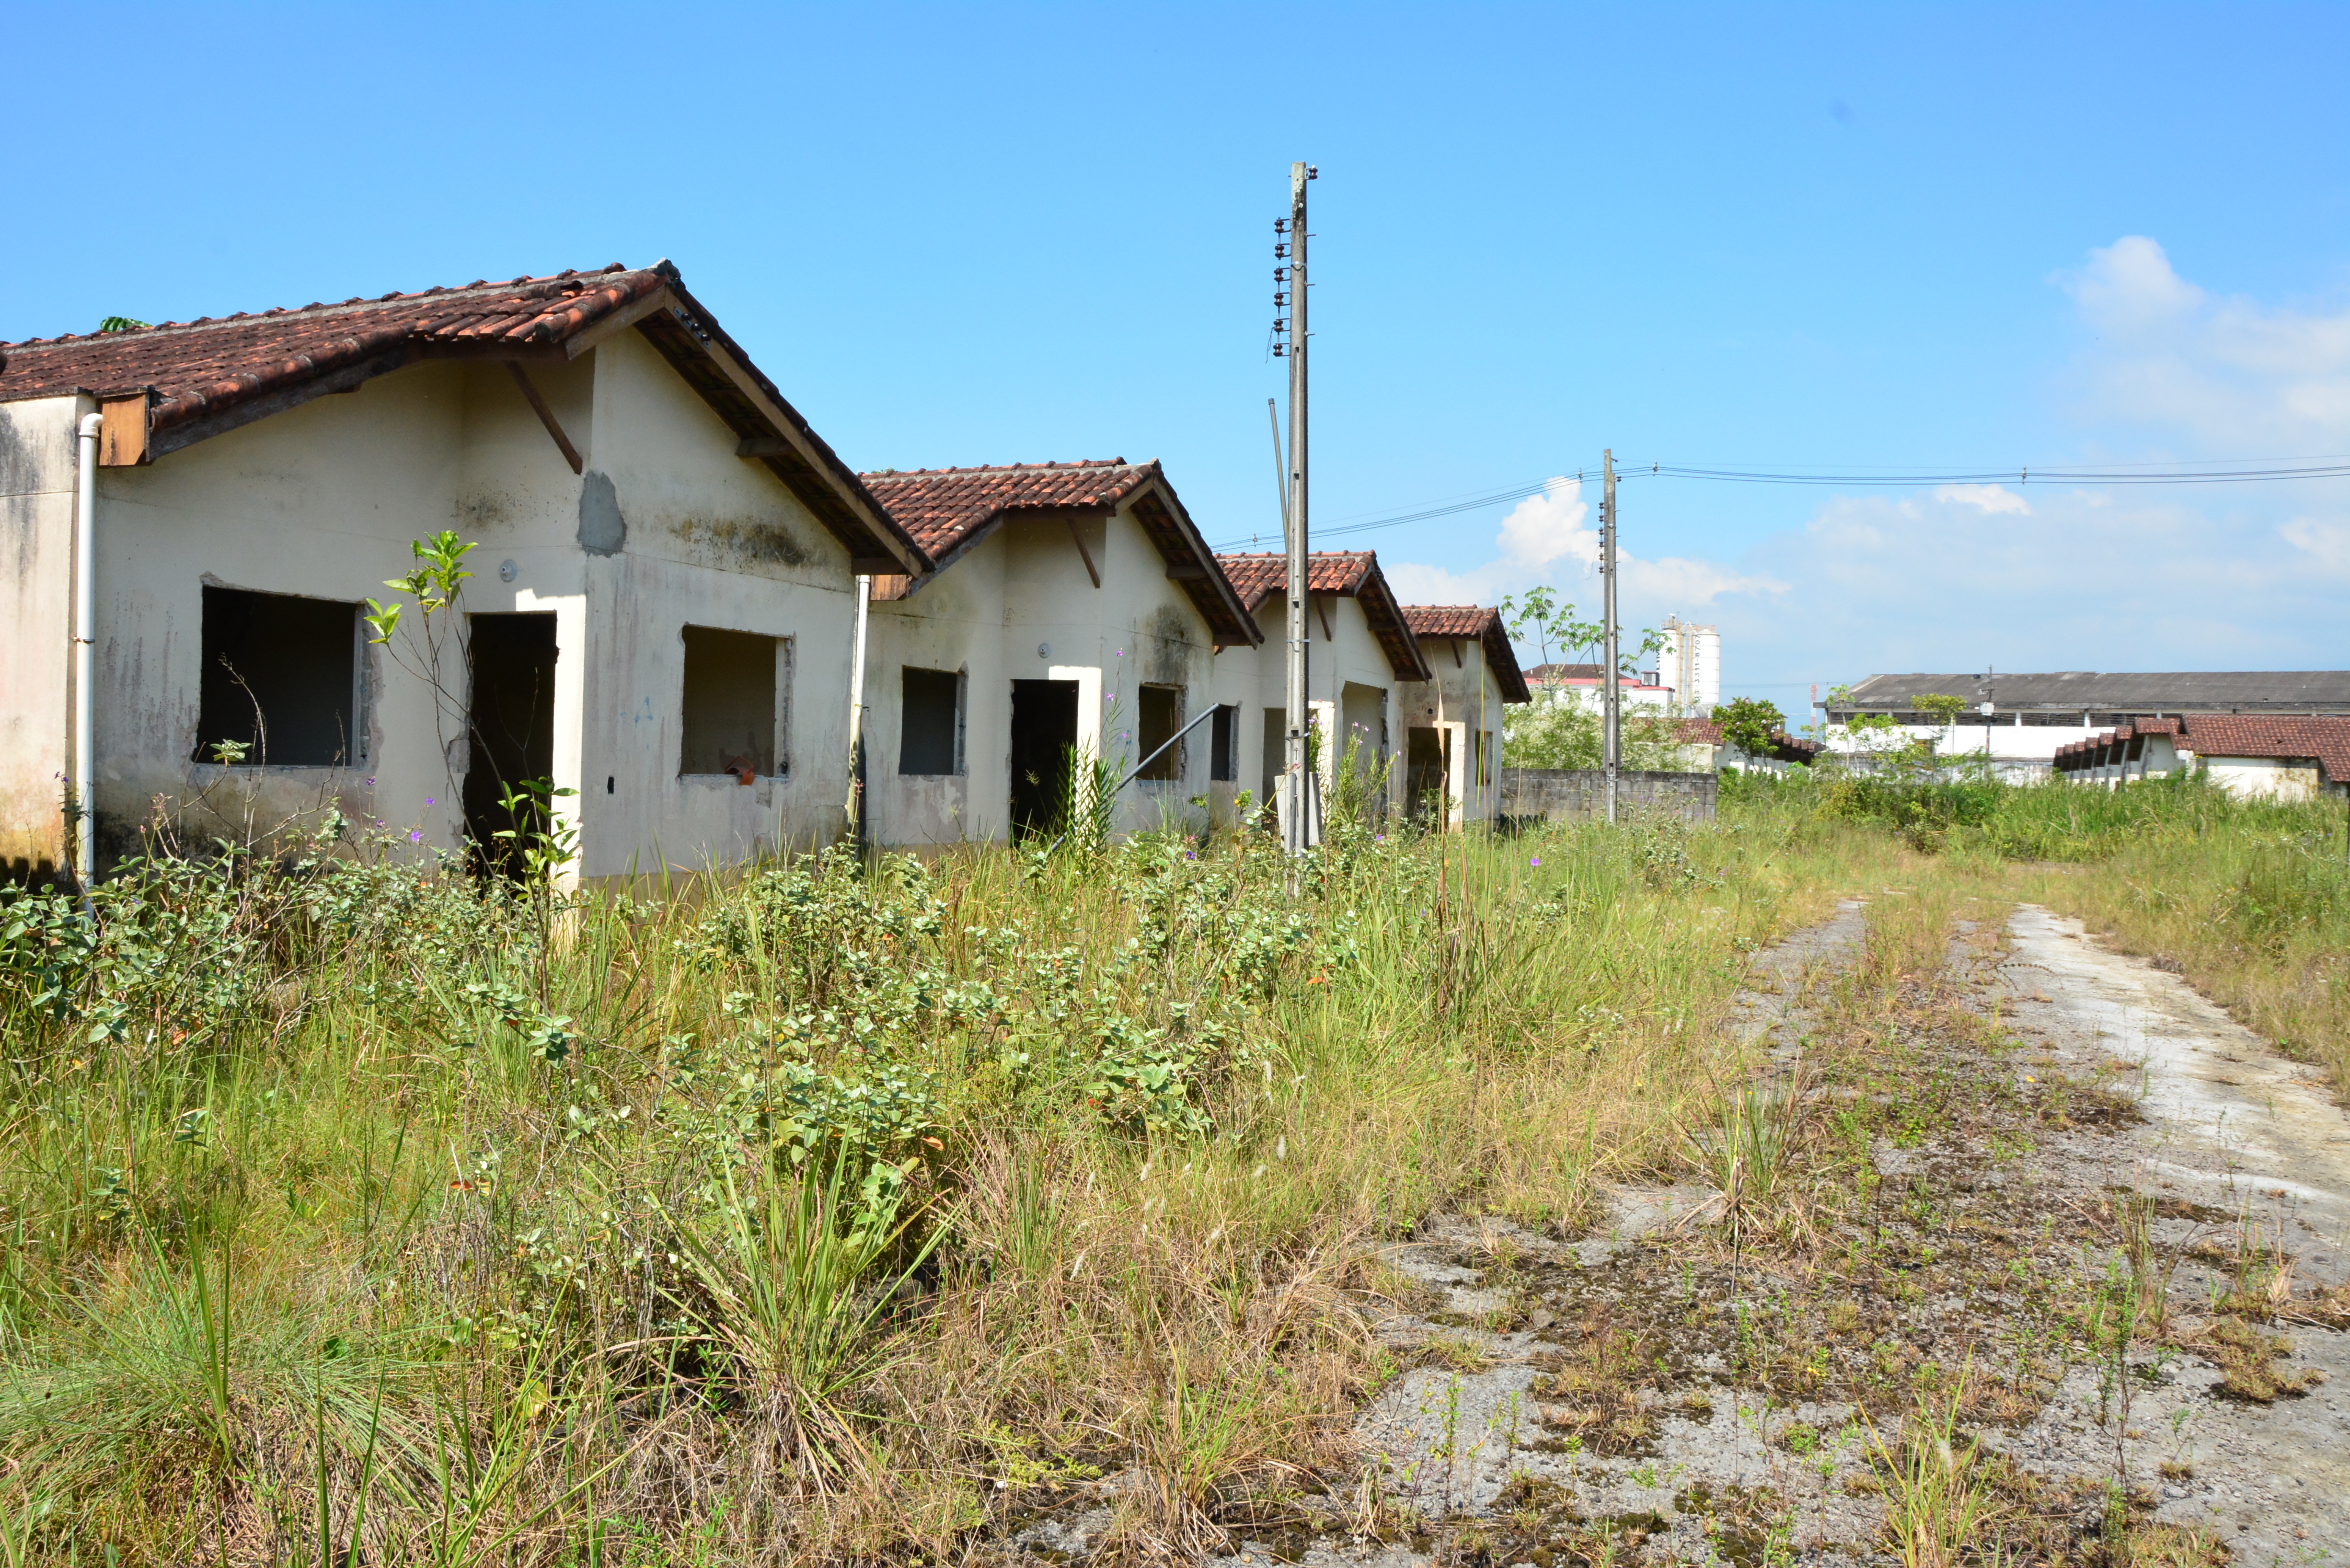 Oficializada compra do terreno da Vila Militar para construção do Centro Comunitário